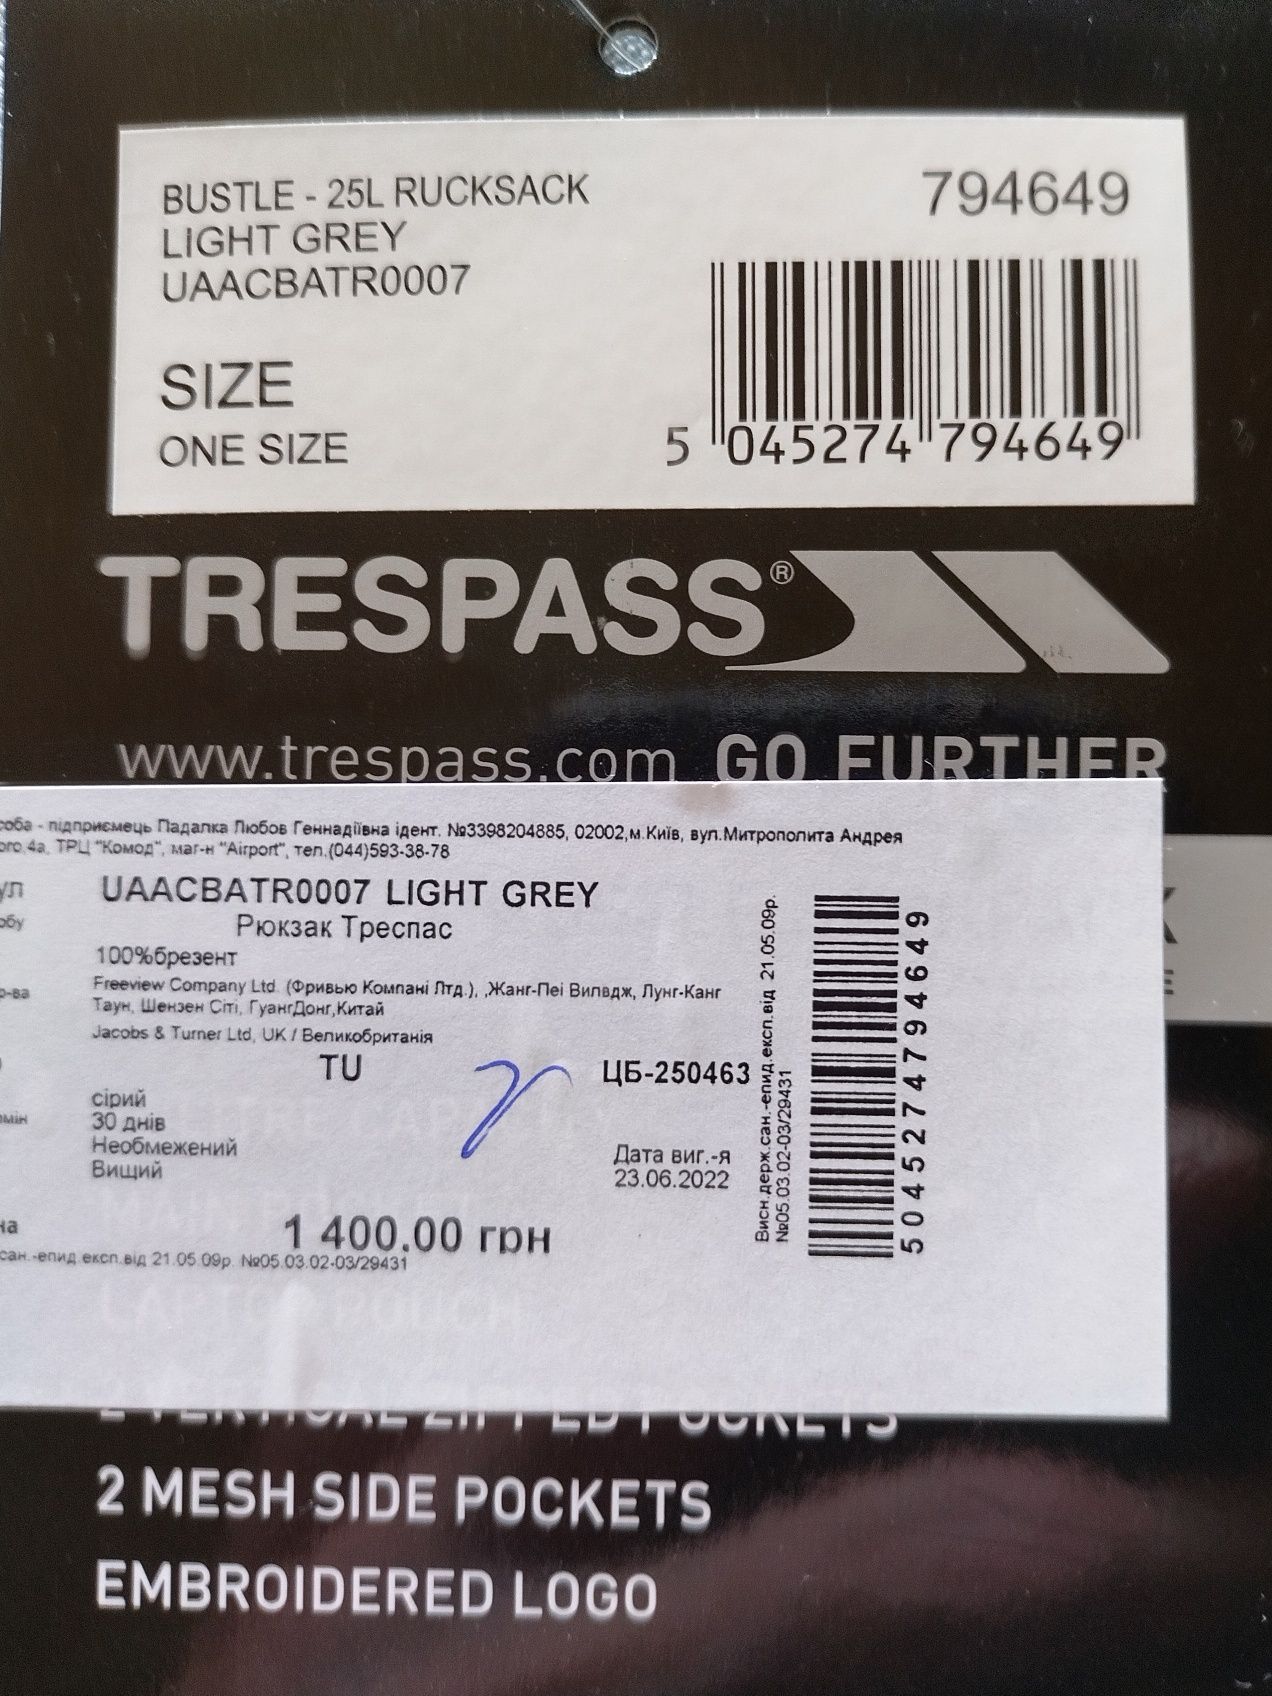 Продам новый рюкзак  Trespass  Bustle 25 светло серого цвета.